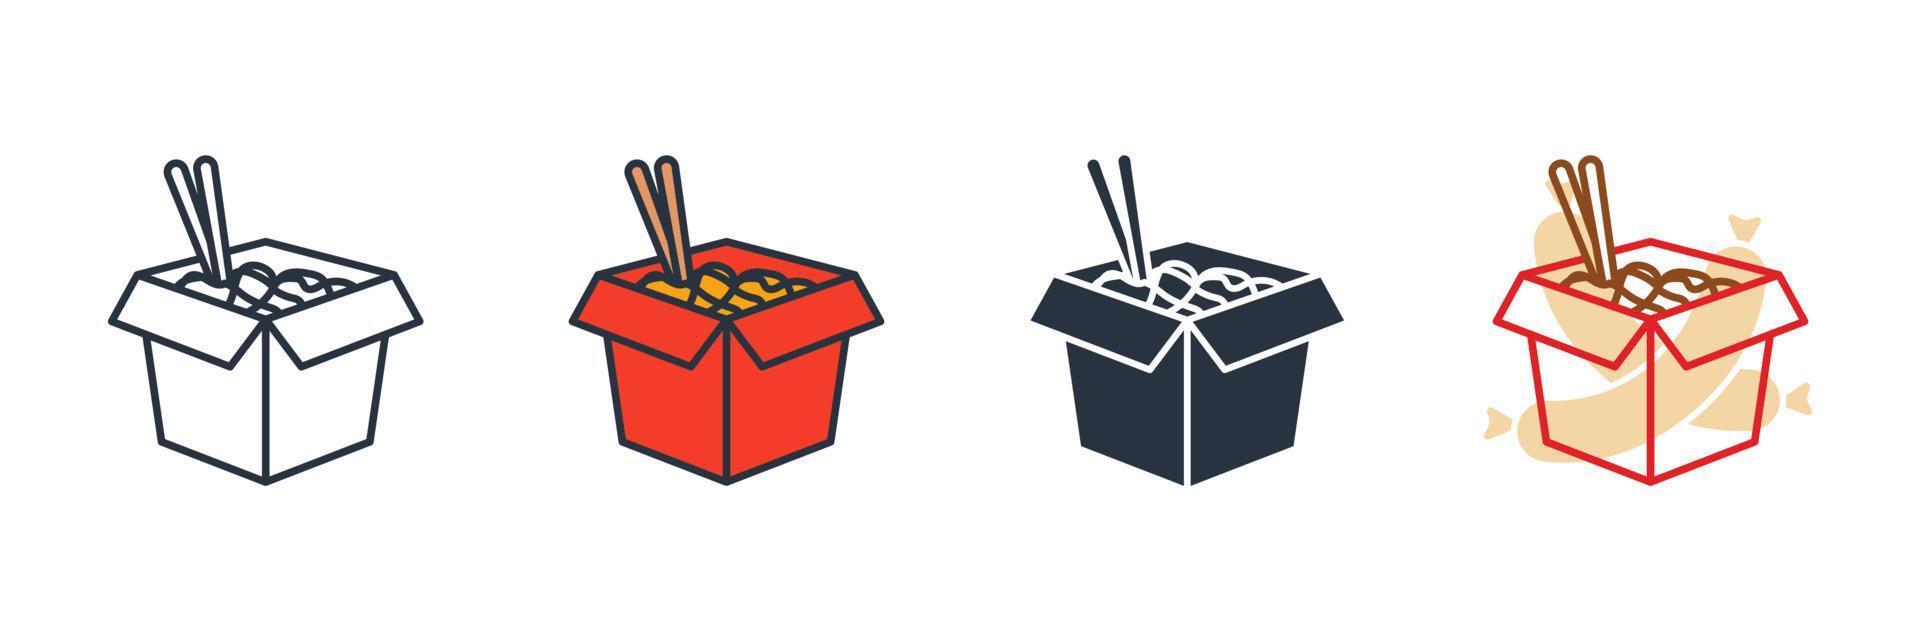 Wok-Box-Symbol-Logo-Vektor-Illustration. asiatische Nudel in Box-Symbolvorlage für Grafik- und Webdesign-Sammlung vektor